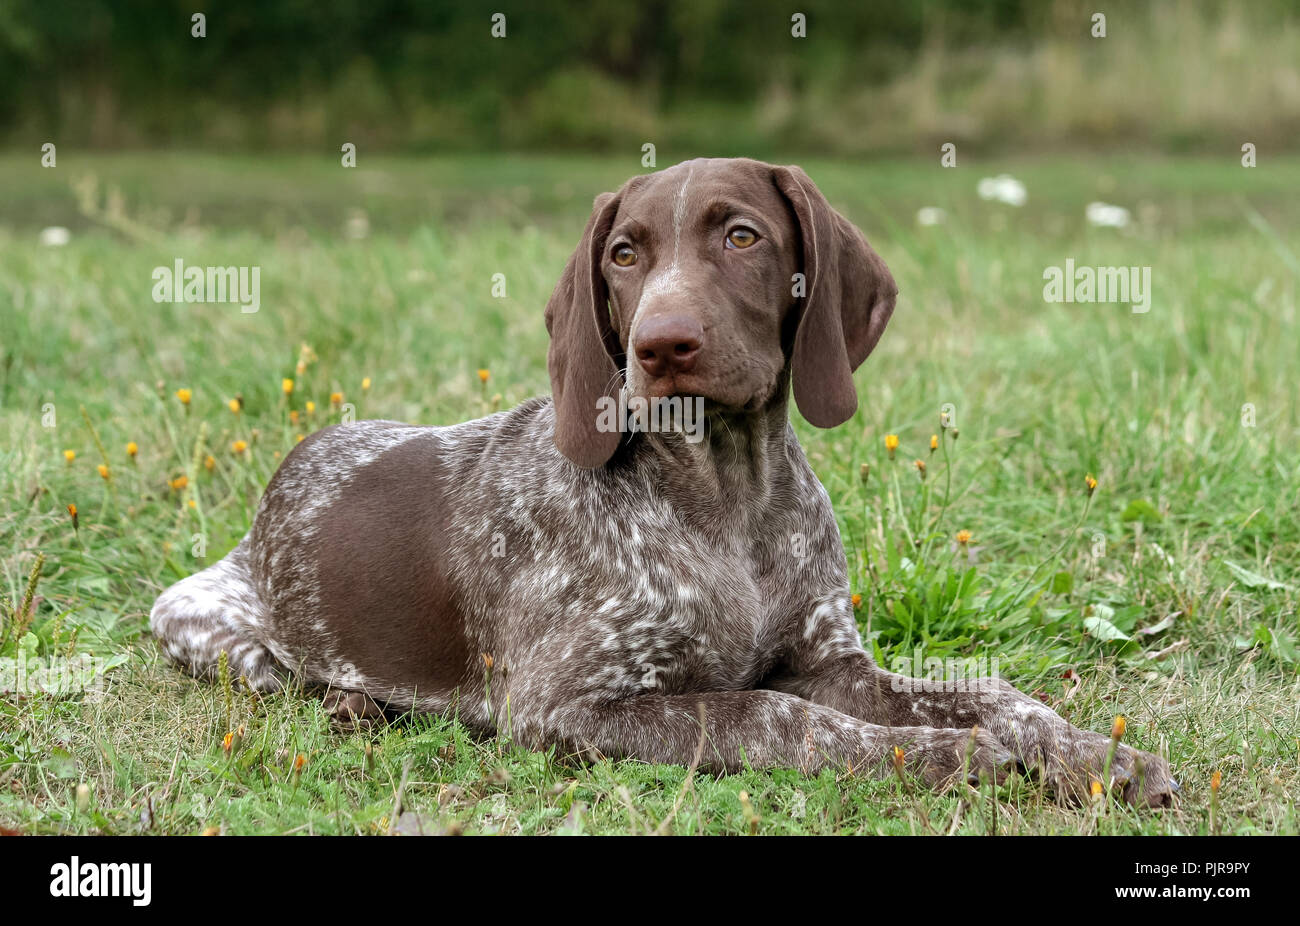 Deutsch Kurzhaar Pointer, deutschen kurtshaar ein Welpe liegend auf grünem Gras entdeckt, auf der Suche direkt in die Augen schauen, intelligente und süßen Hund, Stockfoto